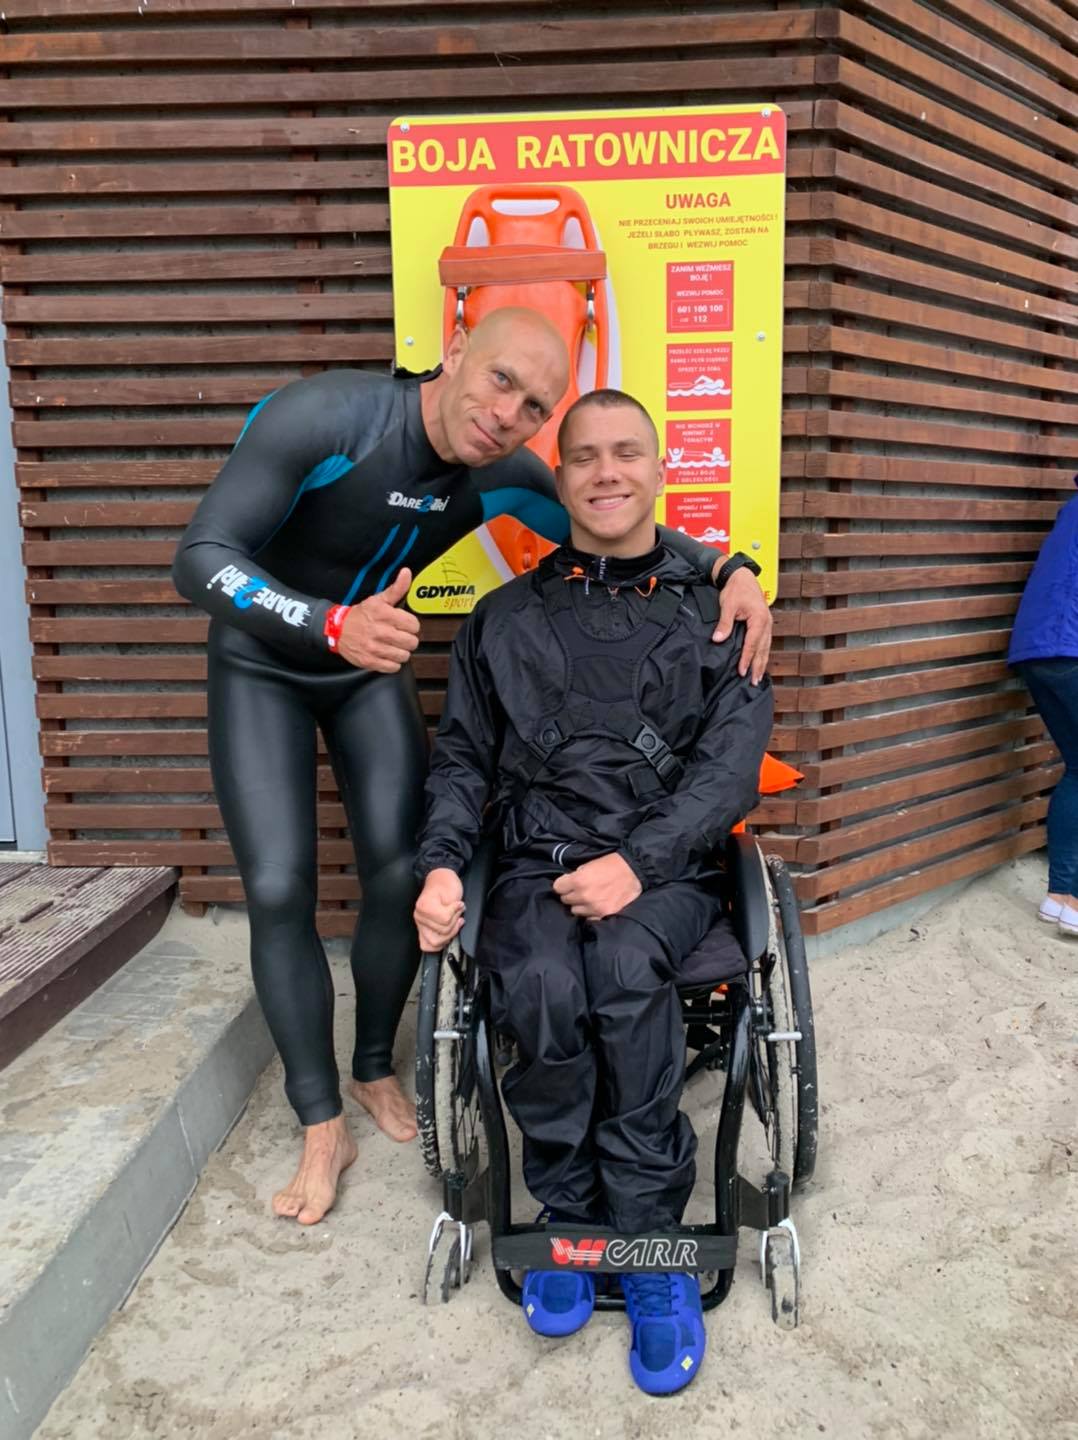 Jakub Jurczak na wózku inwalidzkim obok mężczyzna w stroju do pływania